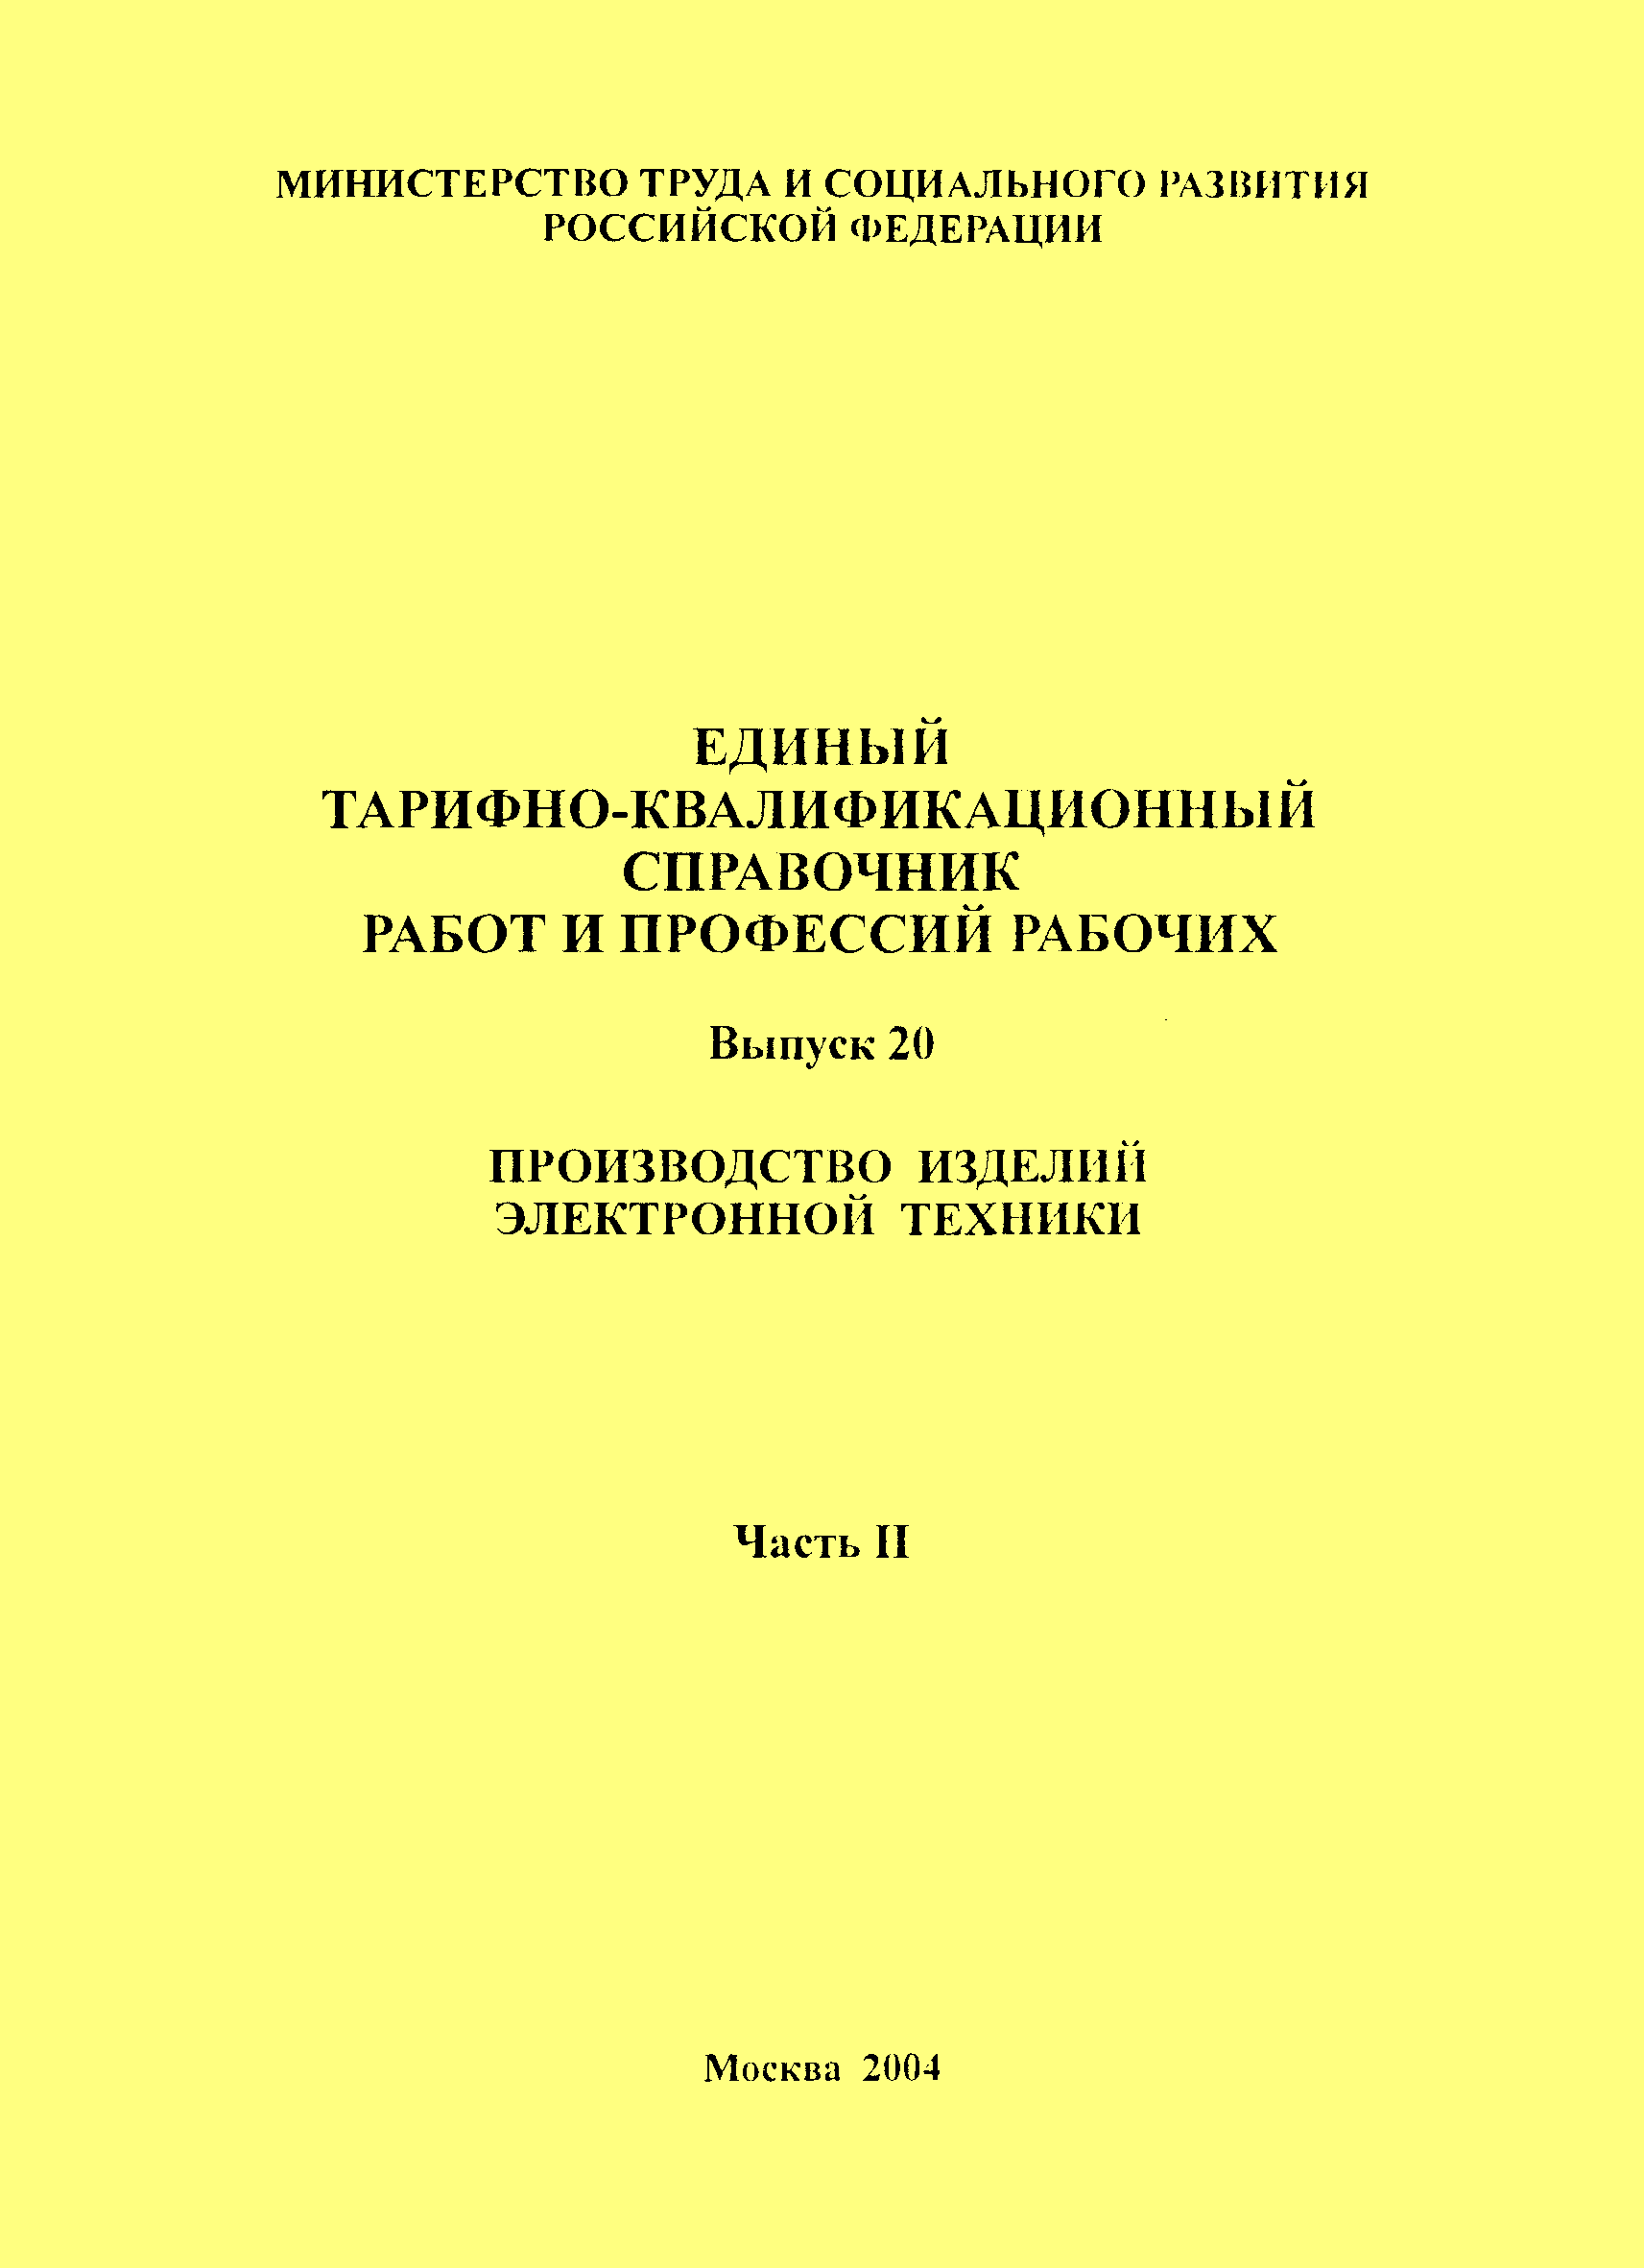 Государственный квалификационный справочник